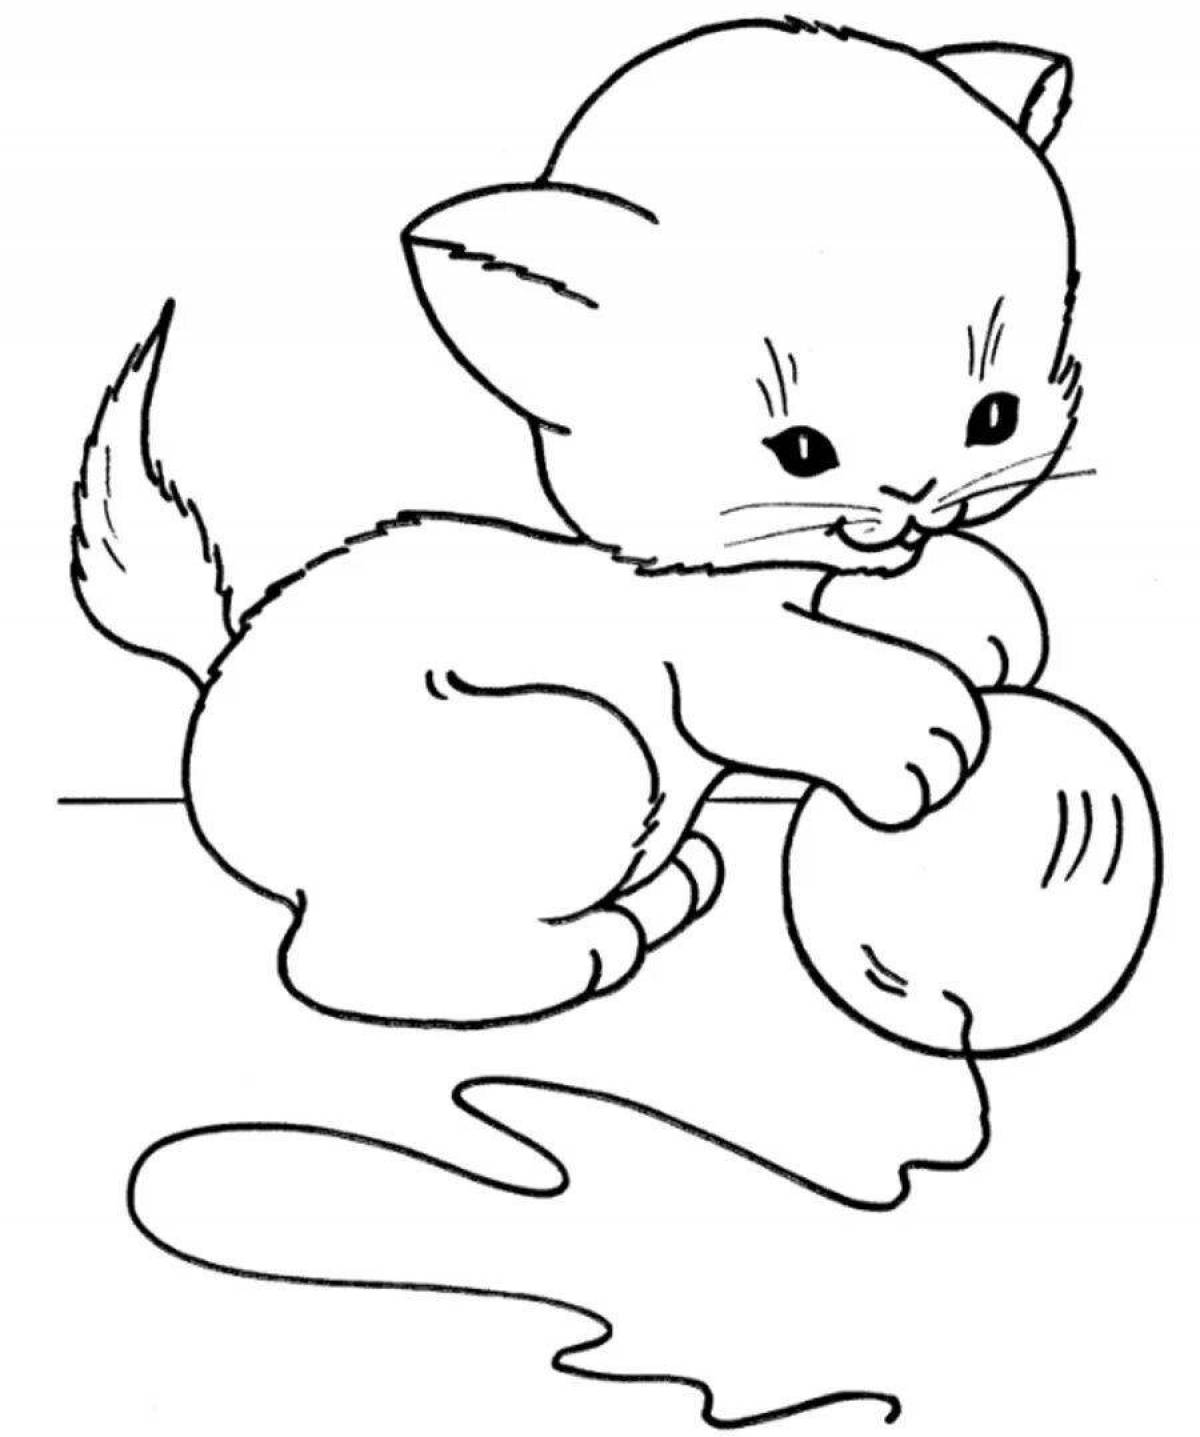 Юмористическая раскраска котенка для детей 2-3 лет